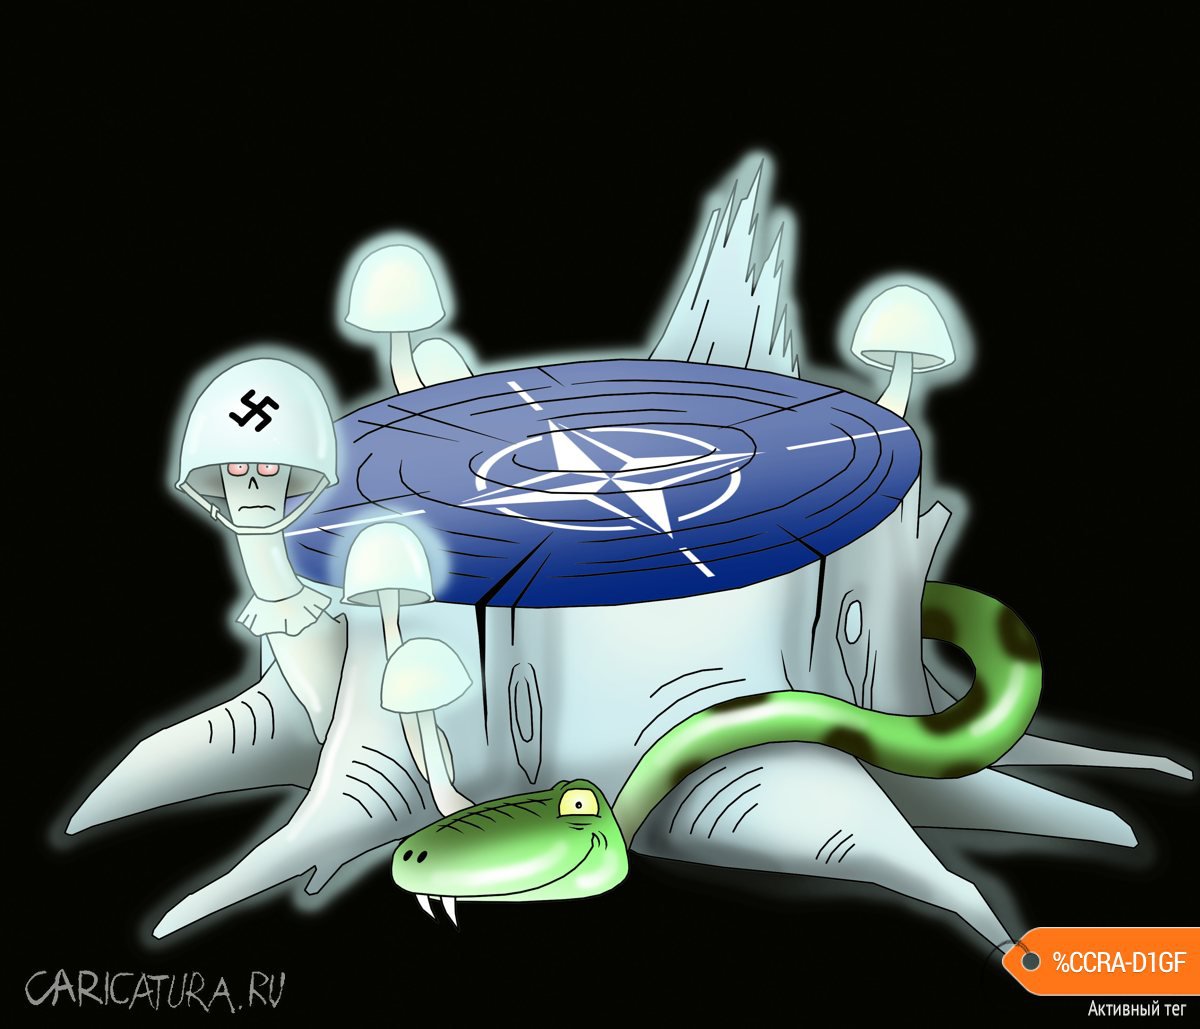 Карикатура "Альянс НАТО - 30 лет в поисках врага", Сергей Корсун